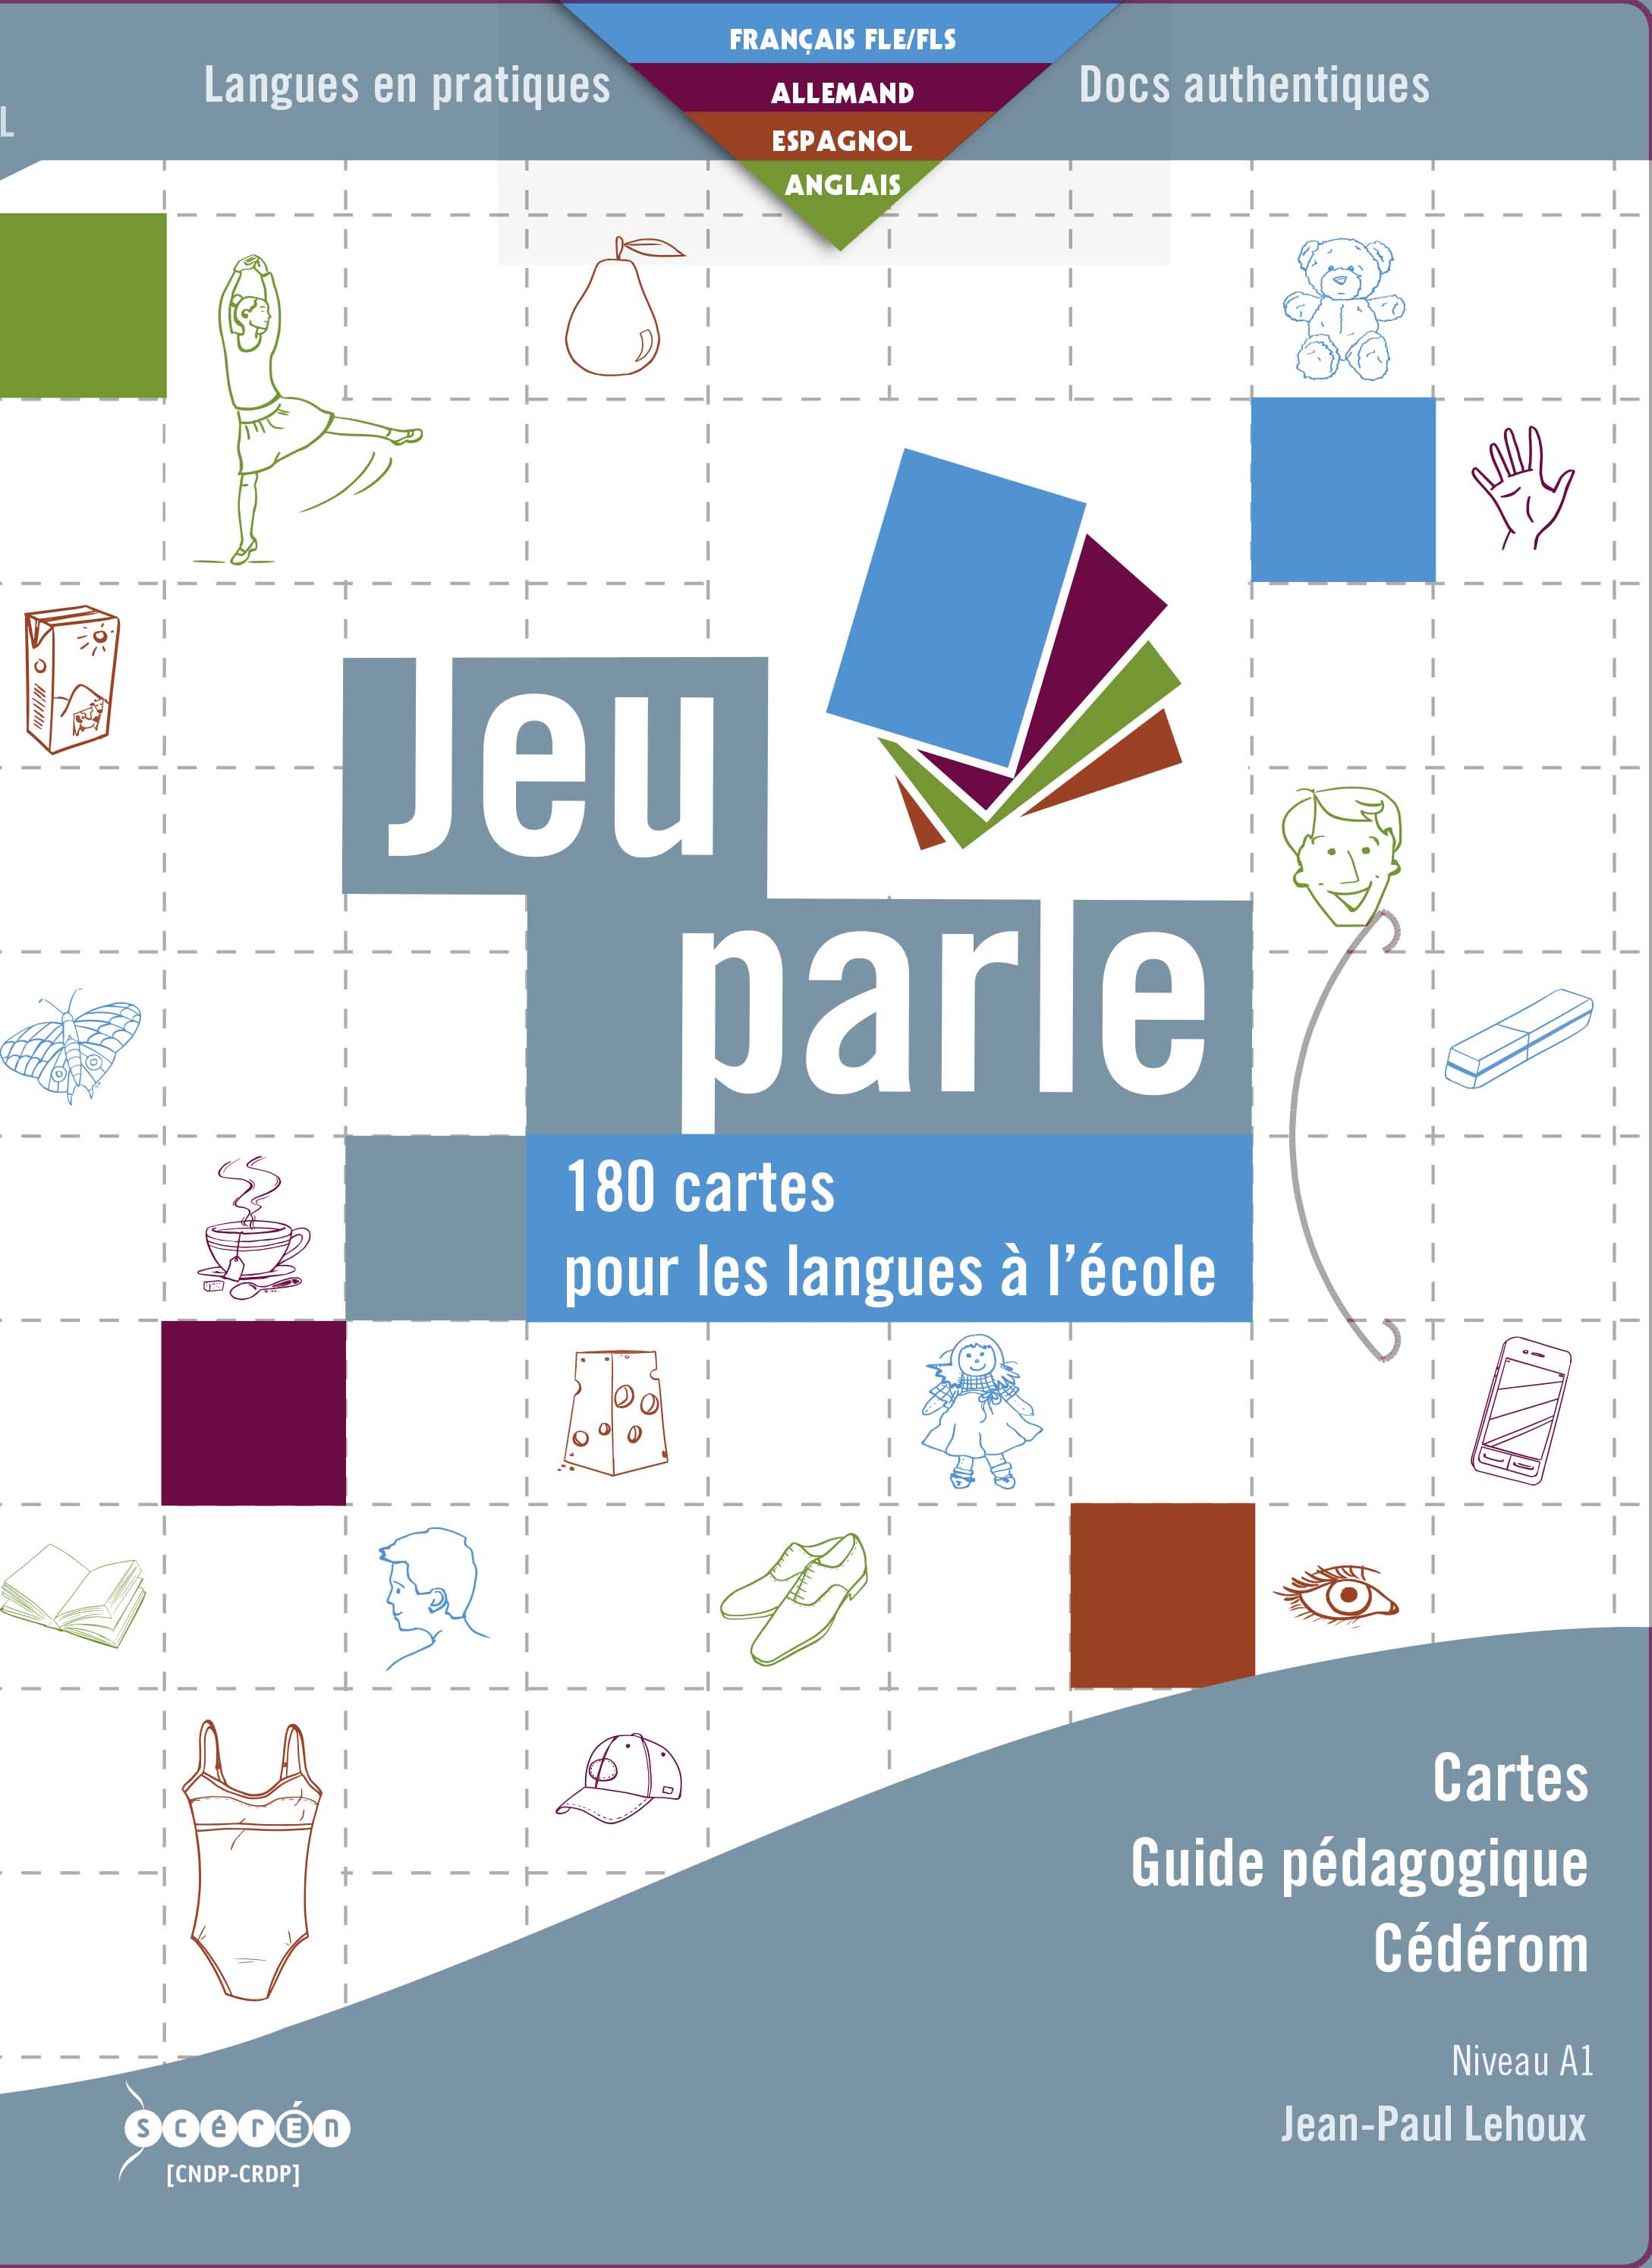 Les vetements: Français FLE fiches pedagogiques pdf & doc